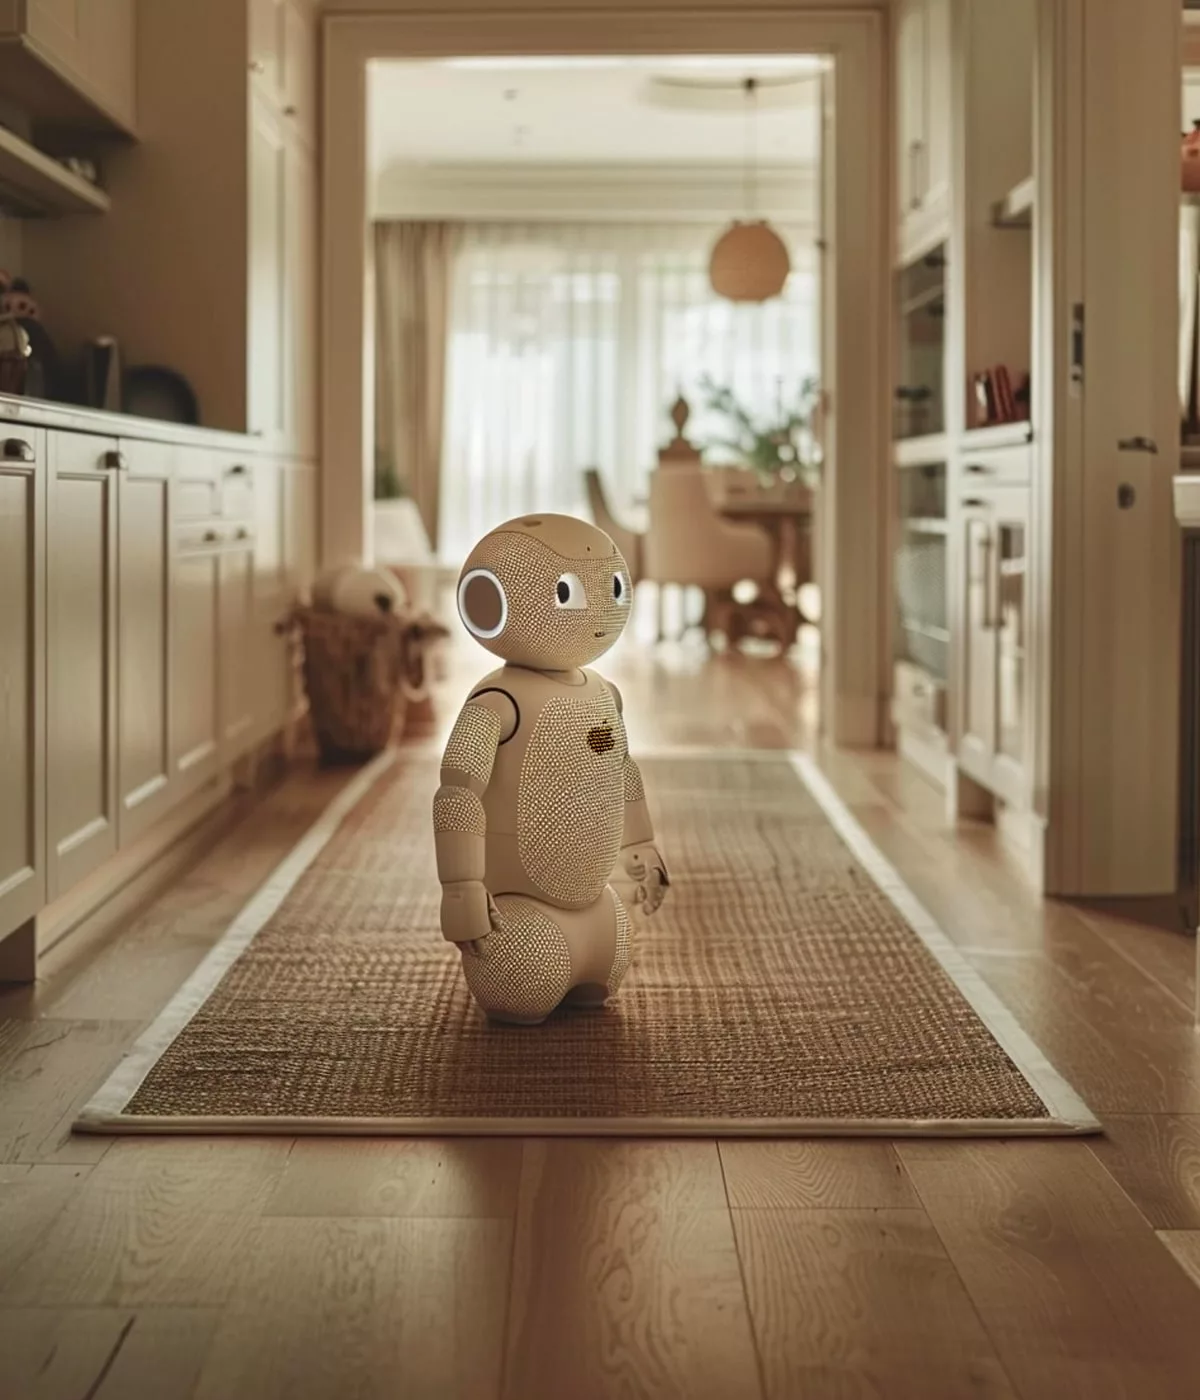 Robot assis dans un couloir maison.